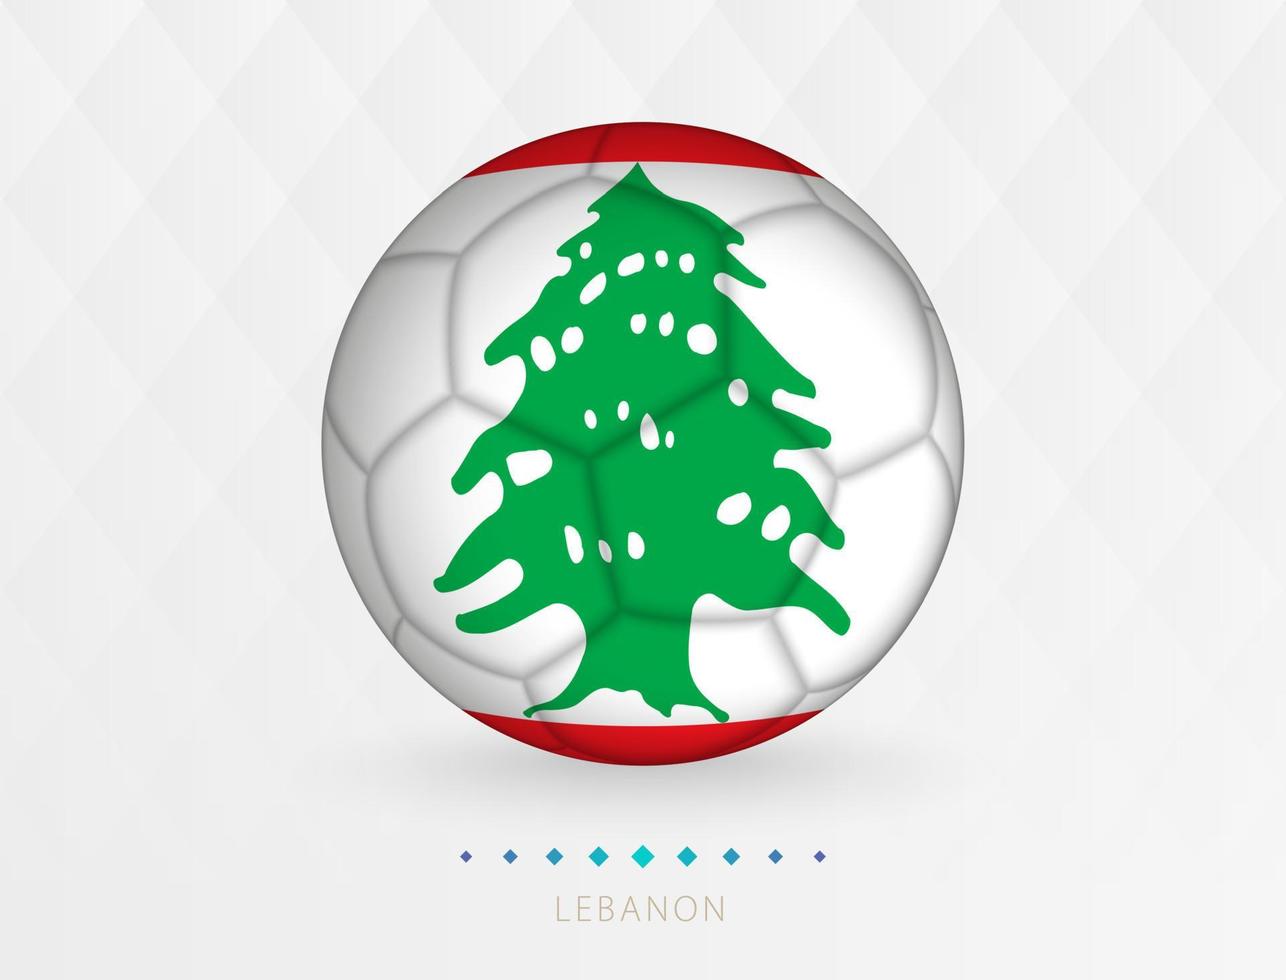 Amerikaans voetbal bal met Libanon vlag patroon, voetbal bal met vlag van Libanon nationaal team. vector